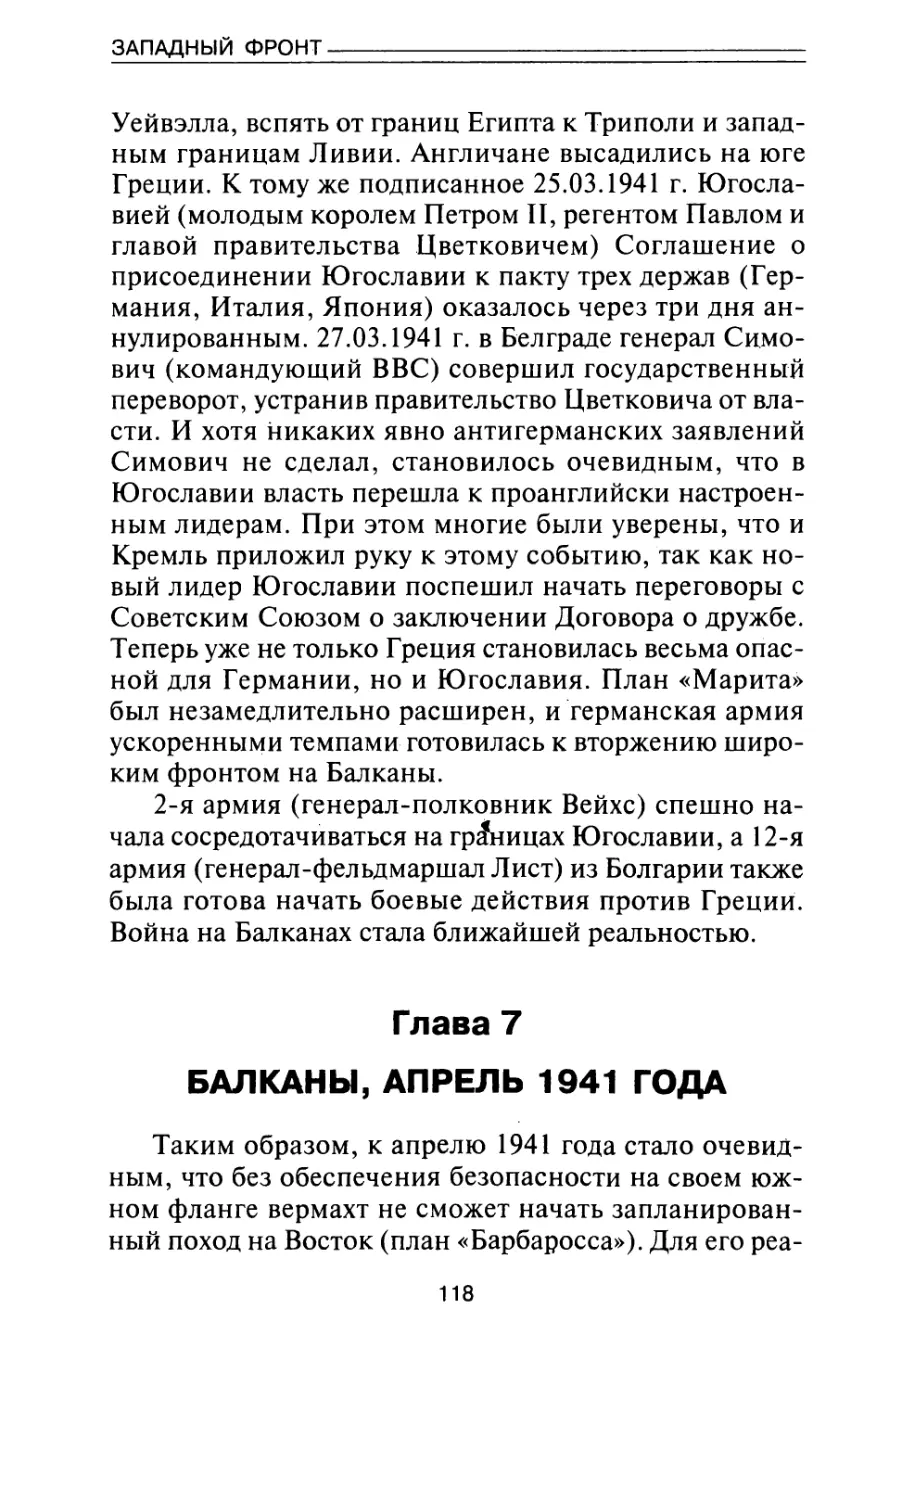 Глава 7. Балканы: апрель 1941 года